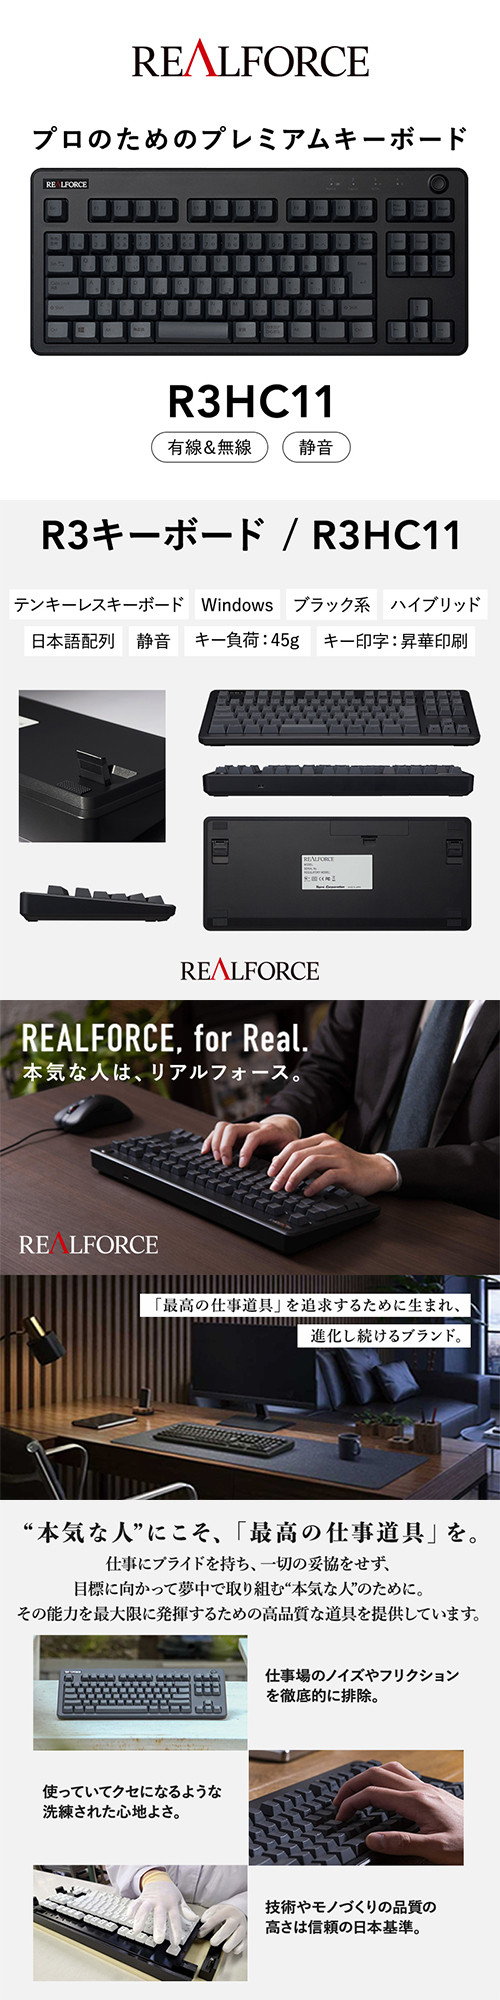 石川県 東プレ REALFORCE リアルフォース R3 キーボード R3HC11 - PC